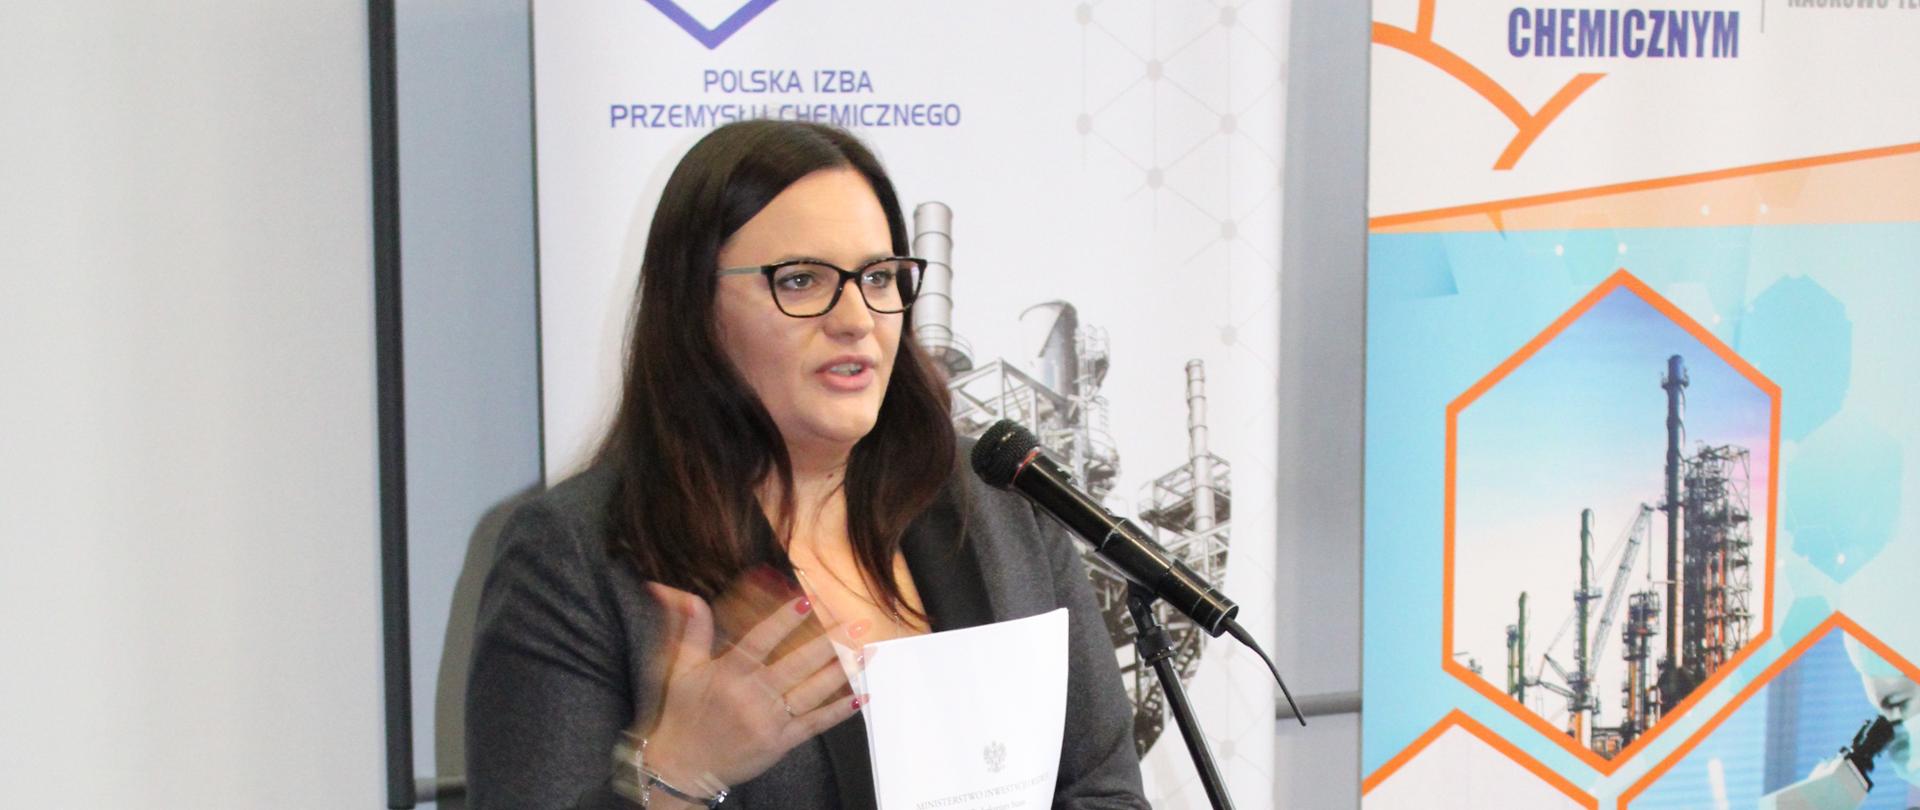 wiceminister Małgorzata Jarosińska-Jedynak mówi do mikrofonu, za nią napis Innowacje w przemyśle chemicznym